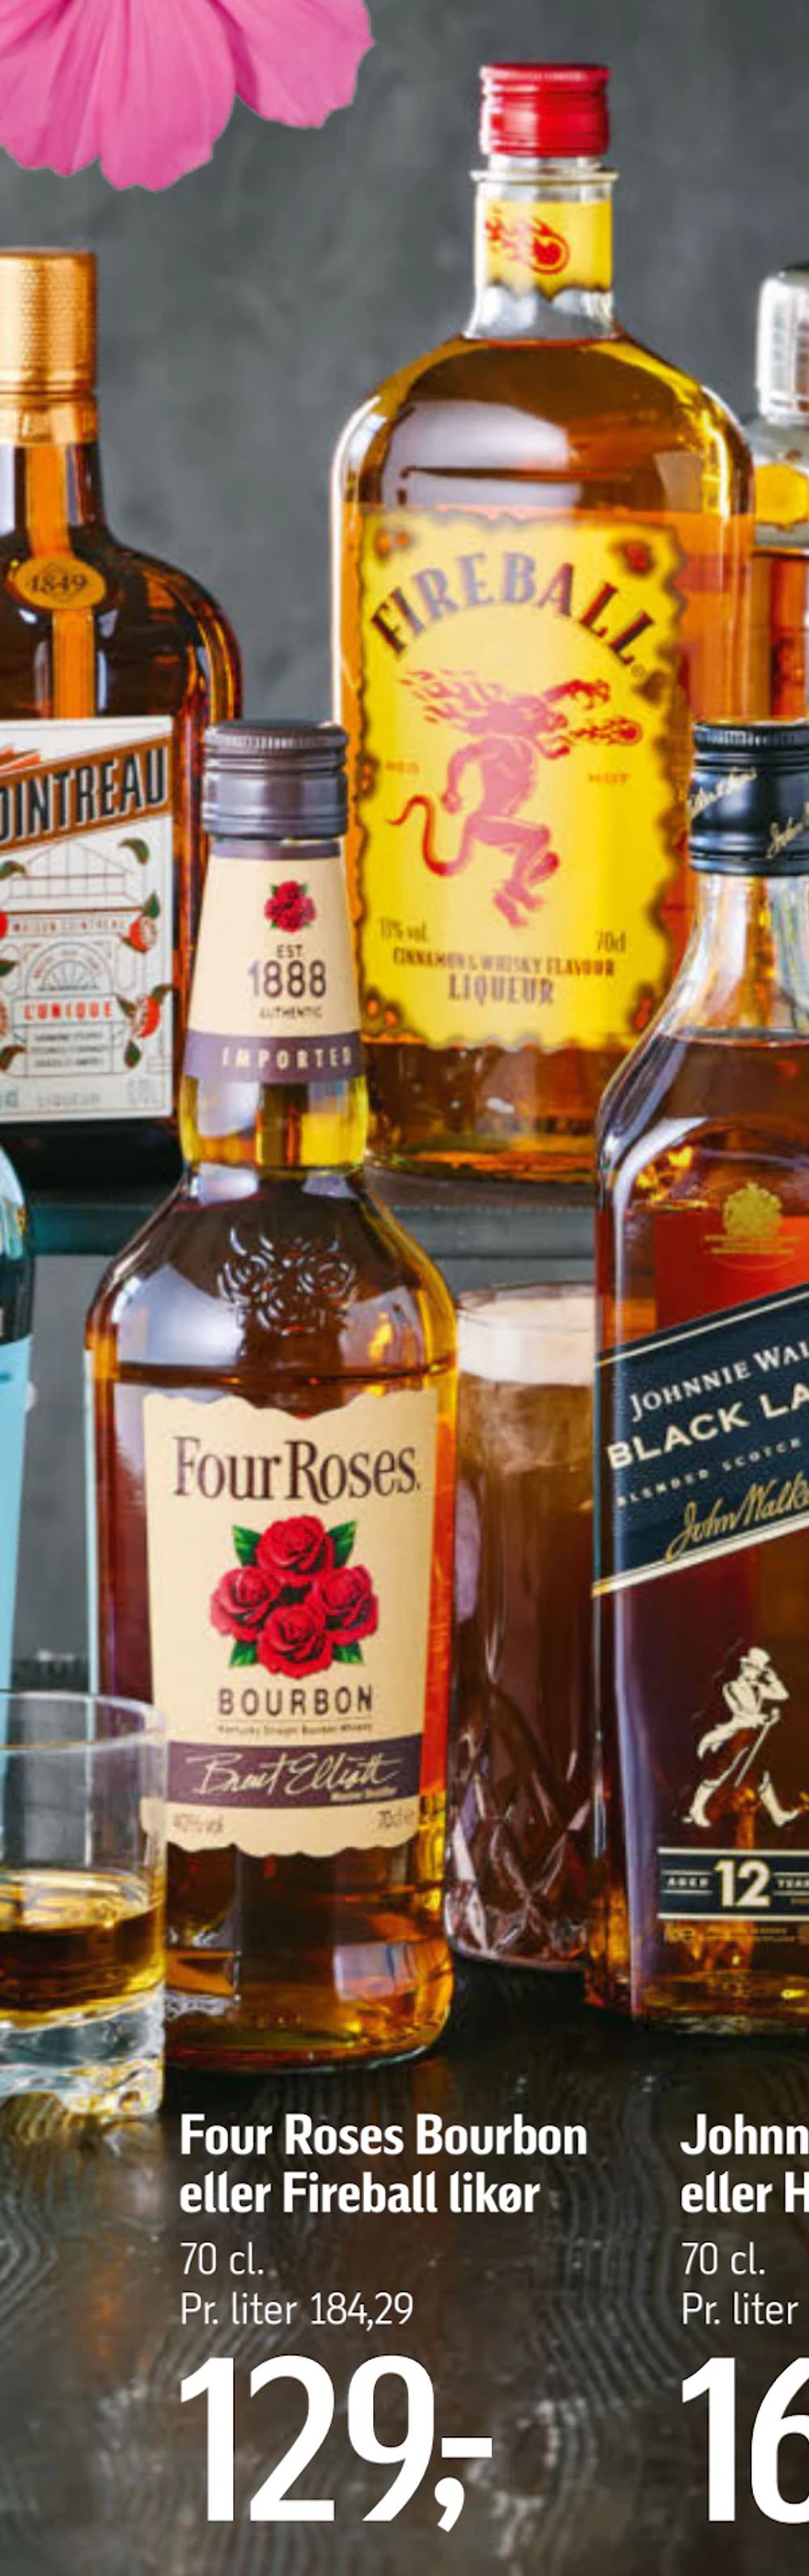 Tilbud på Four Roses Bourbon eller Fireball likør fra føtex til 129 kr.